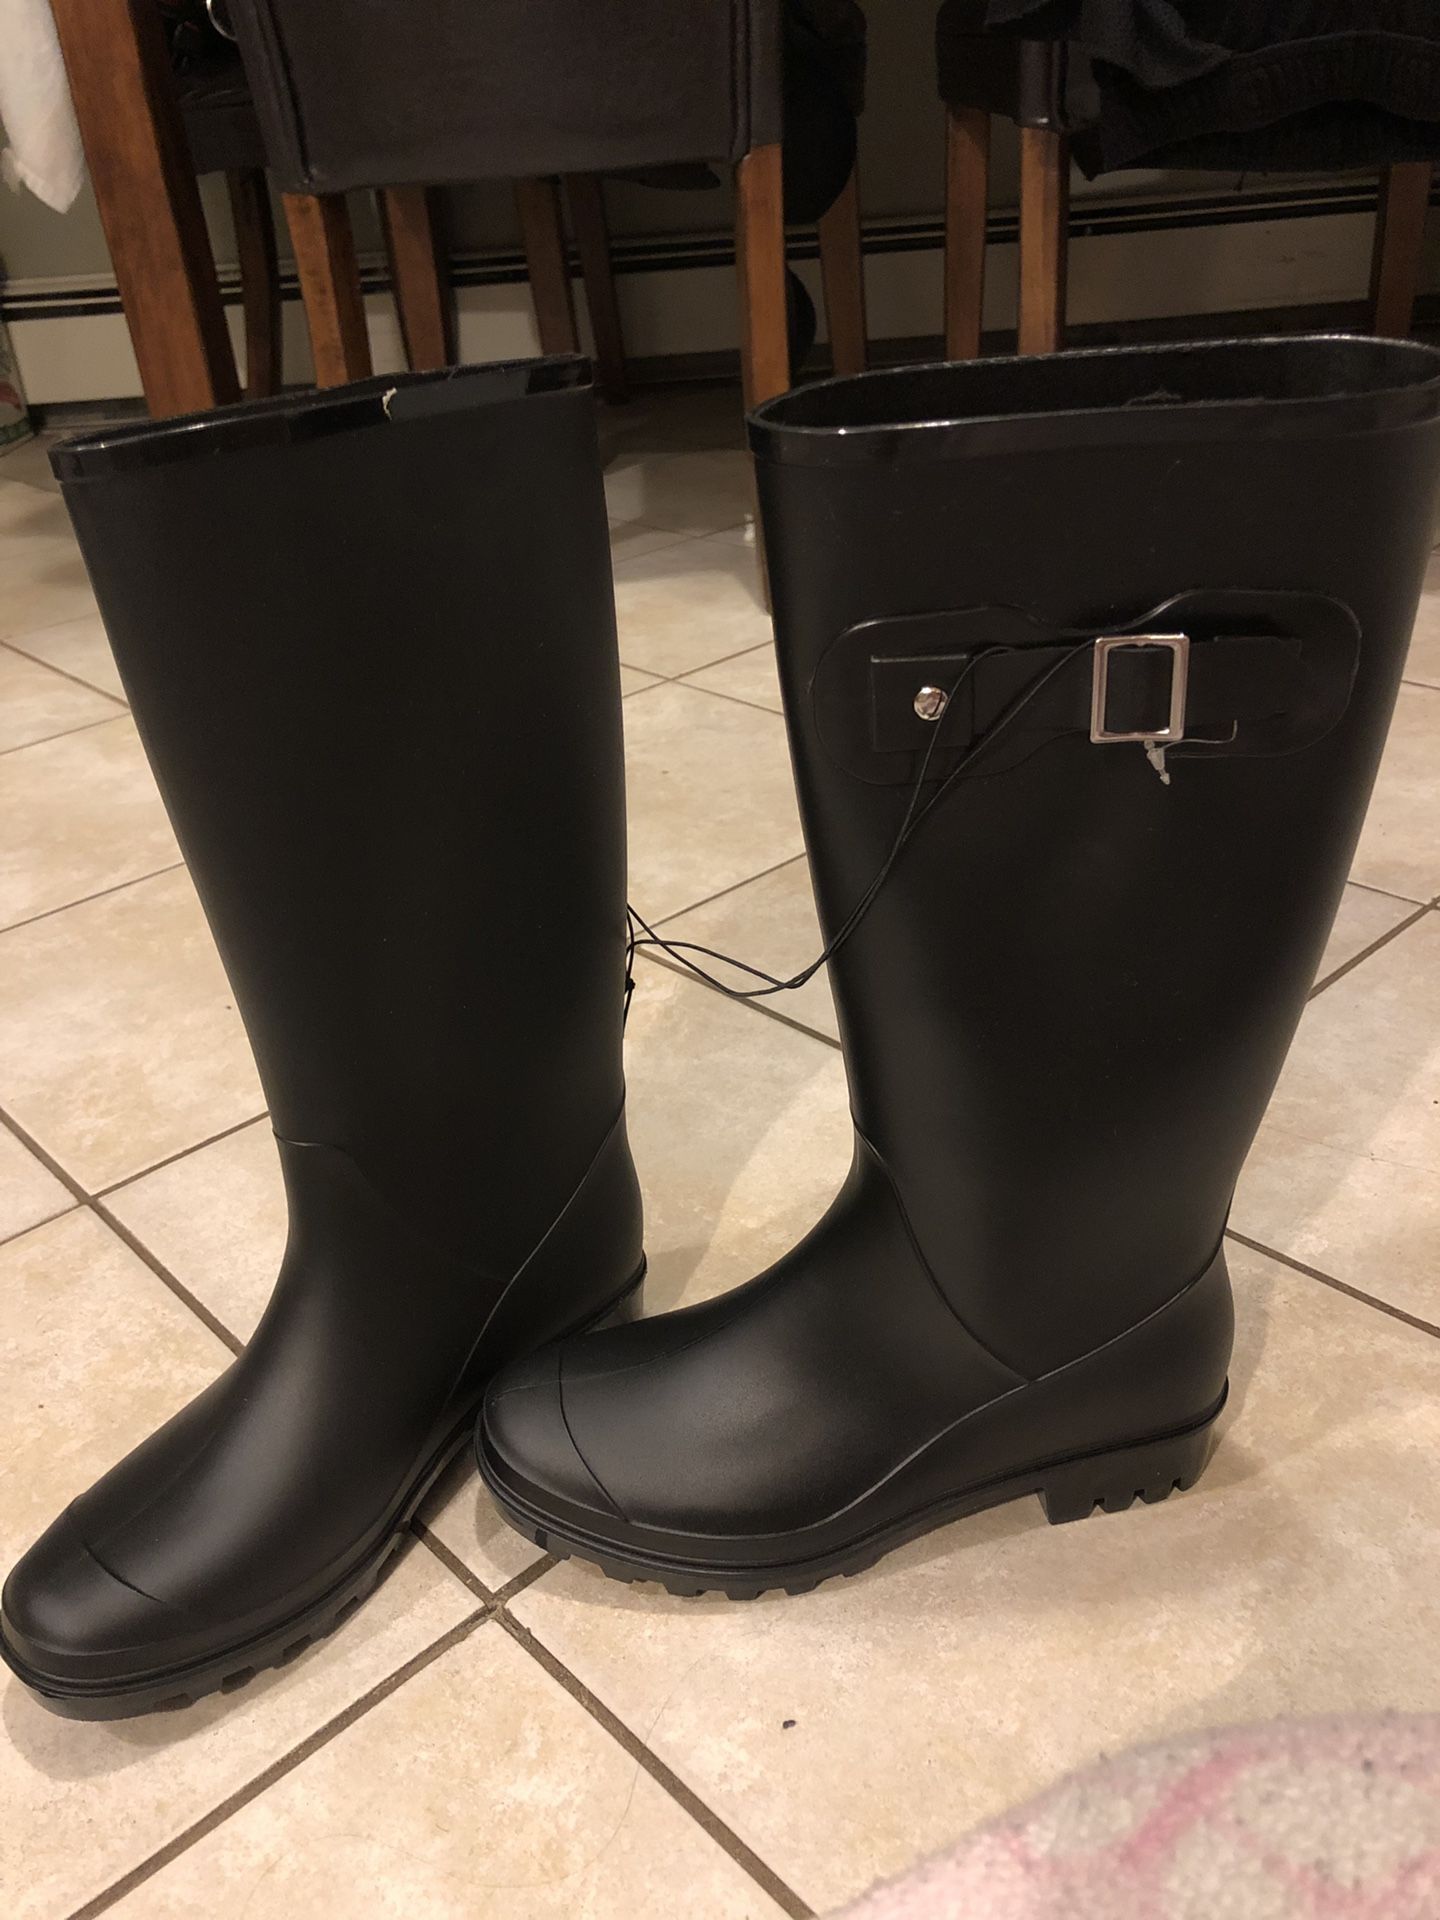 Rain Boots. Size 5 in Women’s